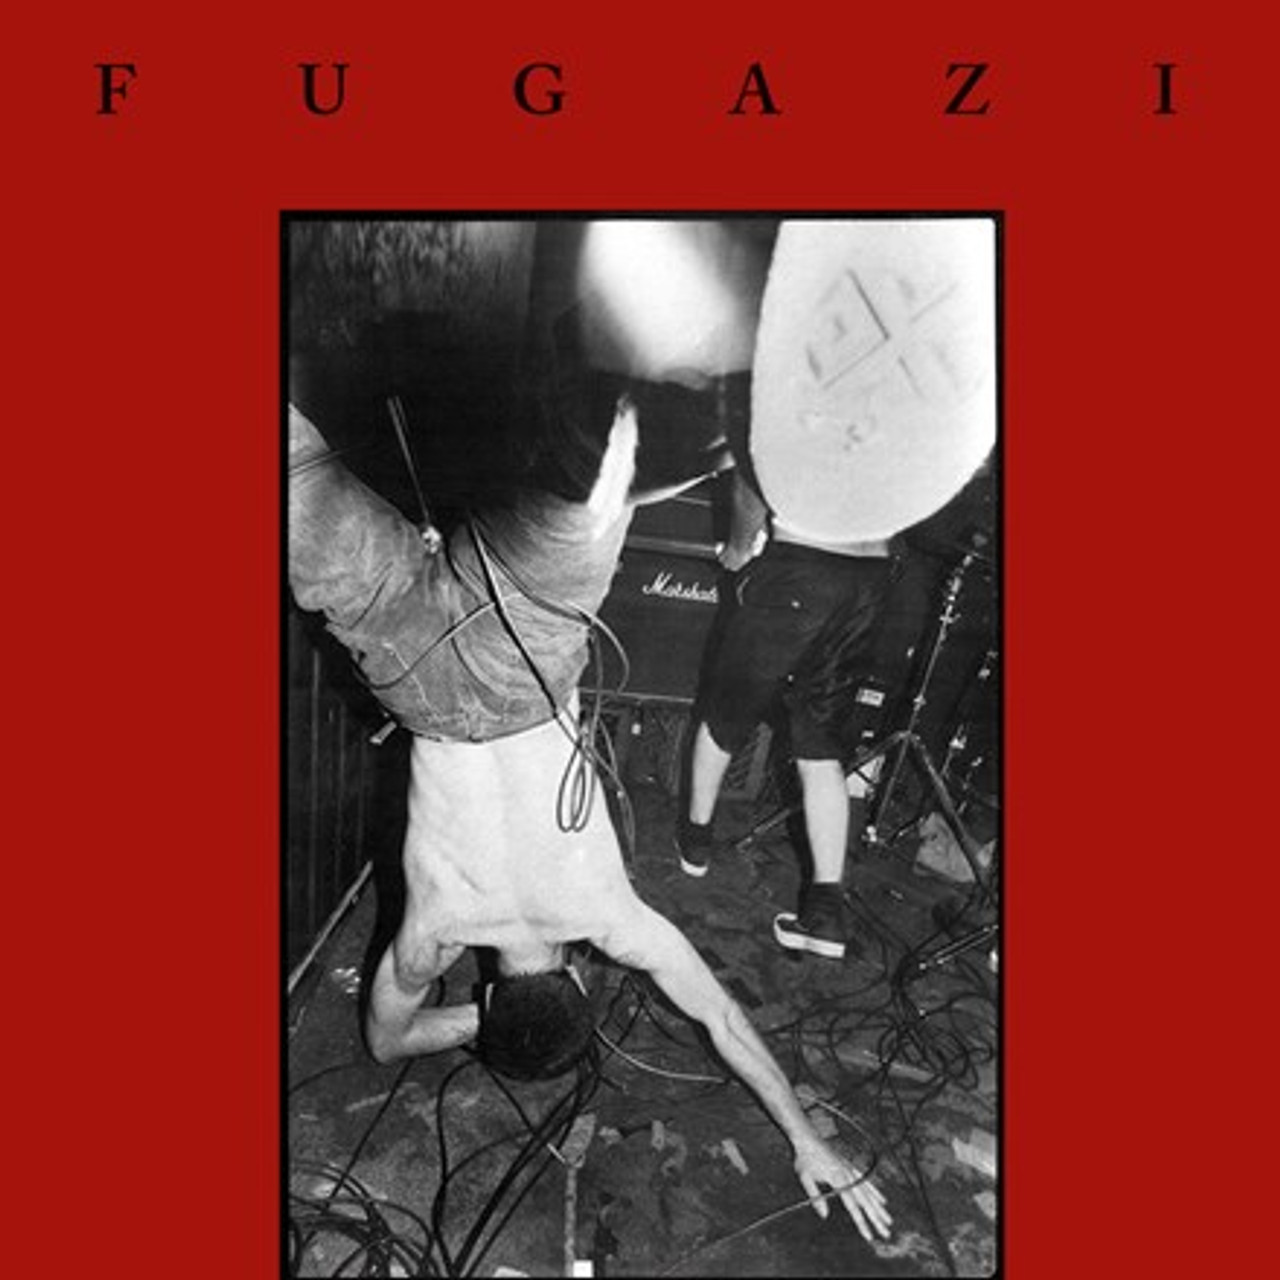 Fugazi - Fugazi (Vinyl LP) - Music Direct